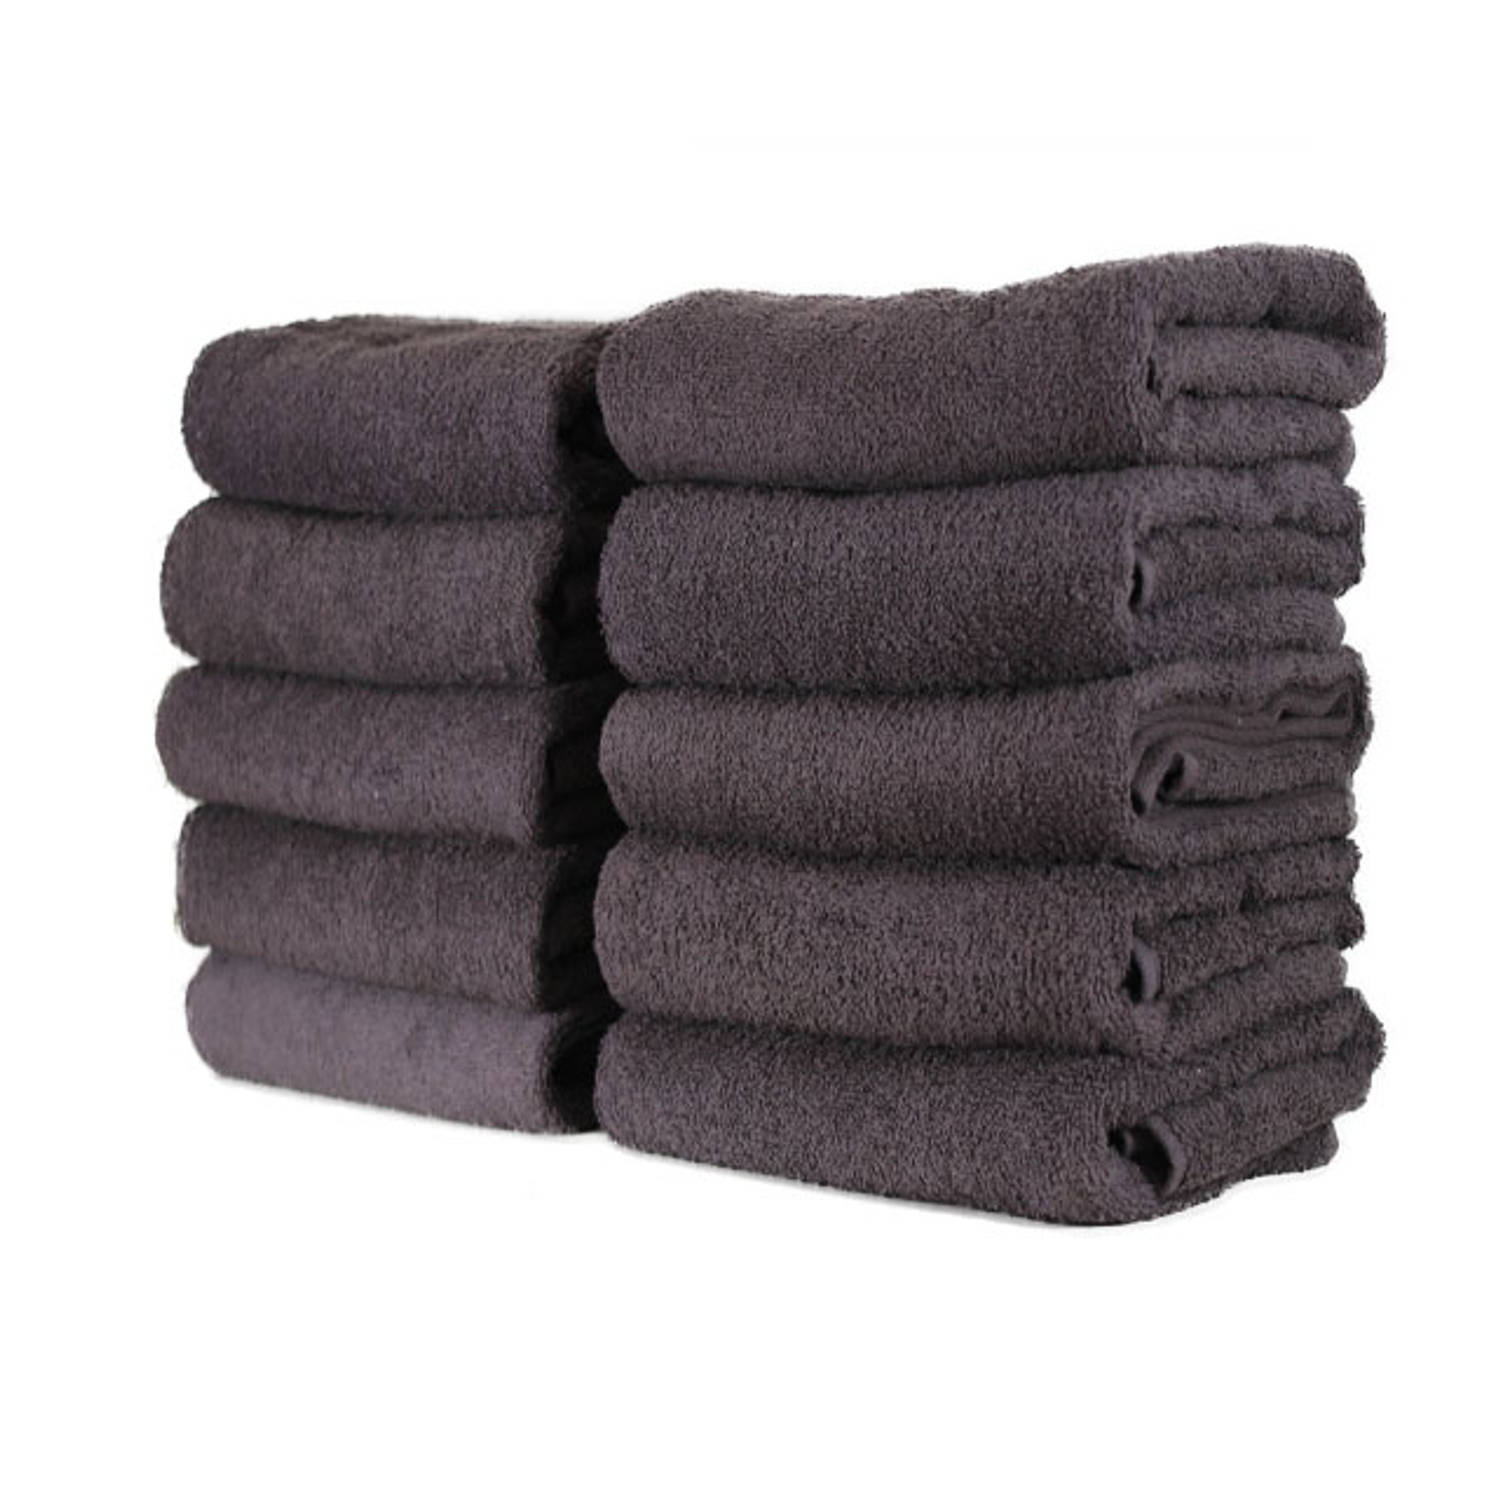 Pence Sortie Nautisch Hotel handdoek - set van 6 stuks - 50x100 cm - Antraciet | Blokker